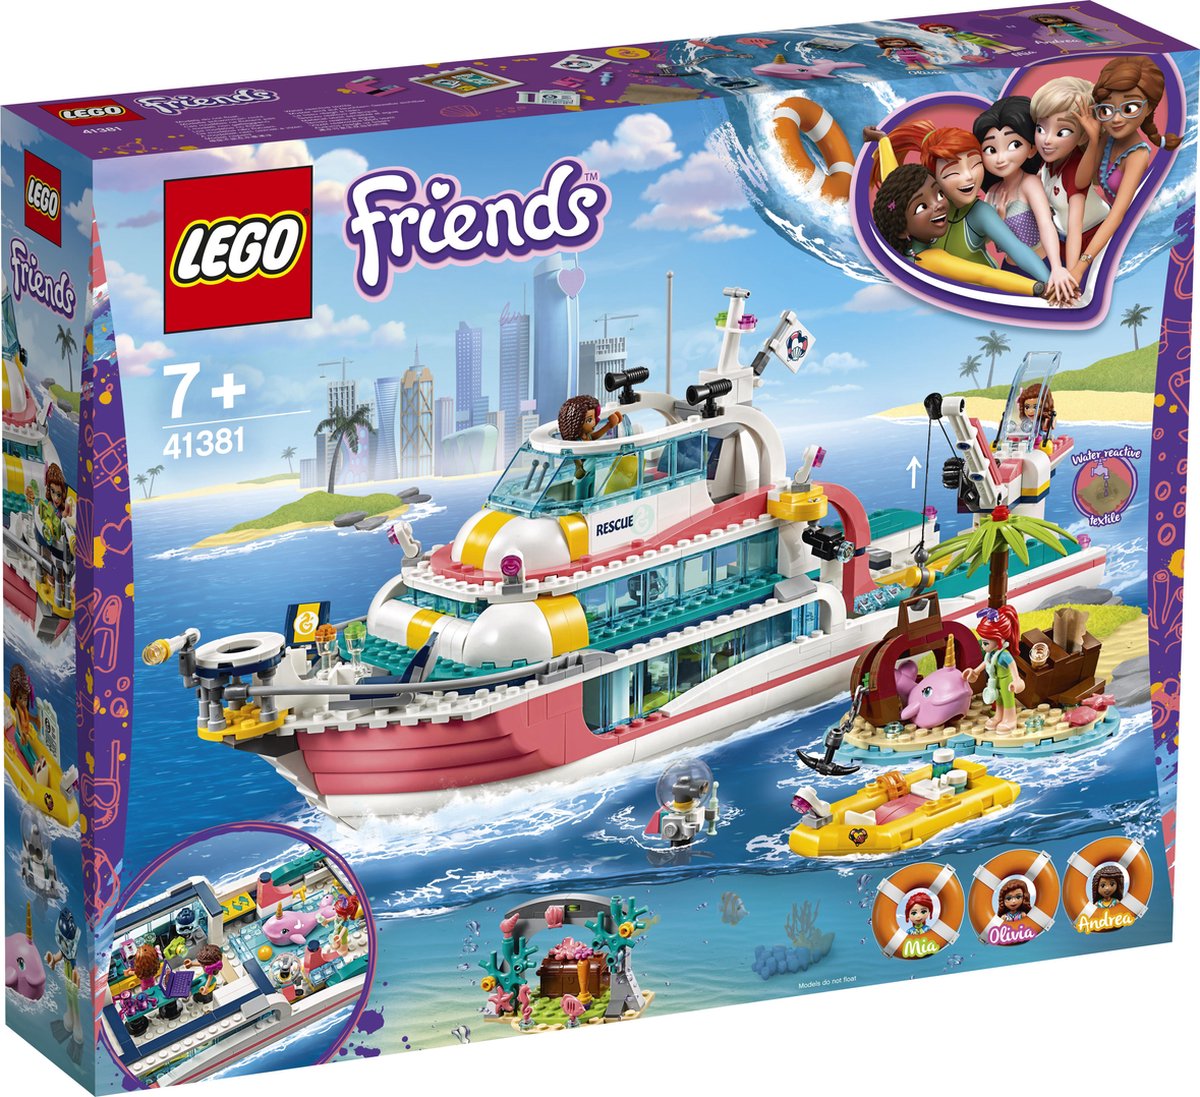 LEGO Friends Le centre de sauvetage du phare 41380 – Kit de construction  (602 pièces)